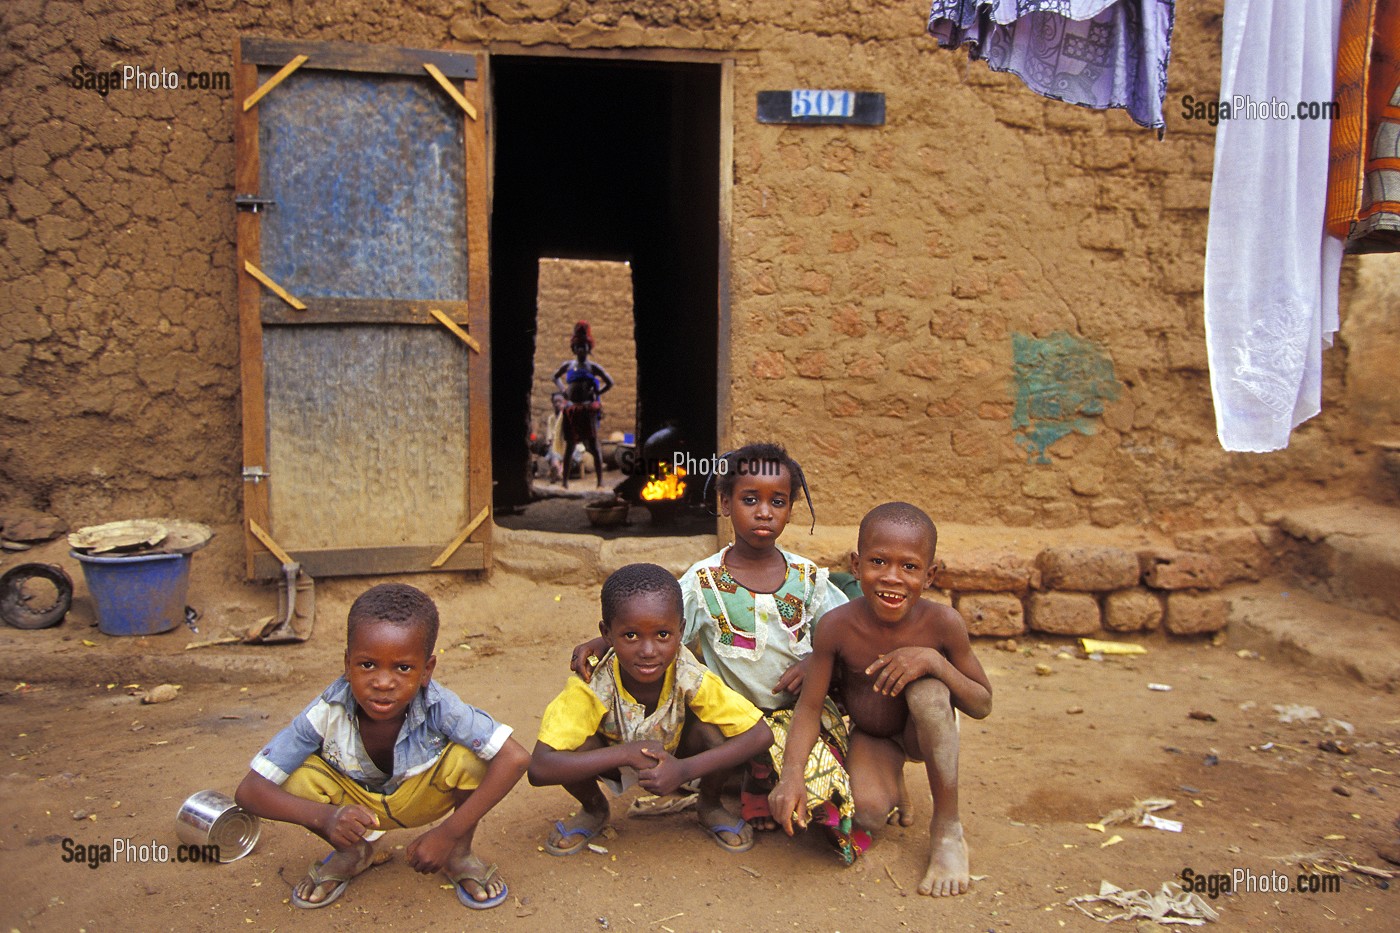 ENFANTS DANS LA COUR DE LEUR MAISON, HABITAT LOCAL, BOBO-DIOULASSO, BURKINA FASO 